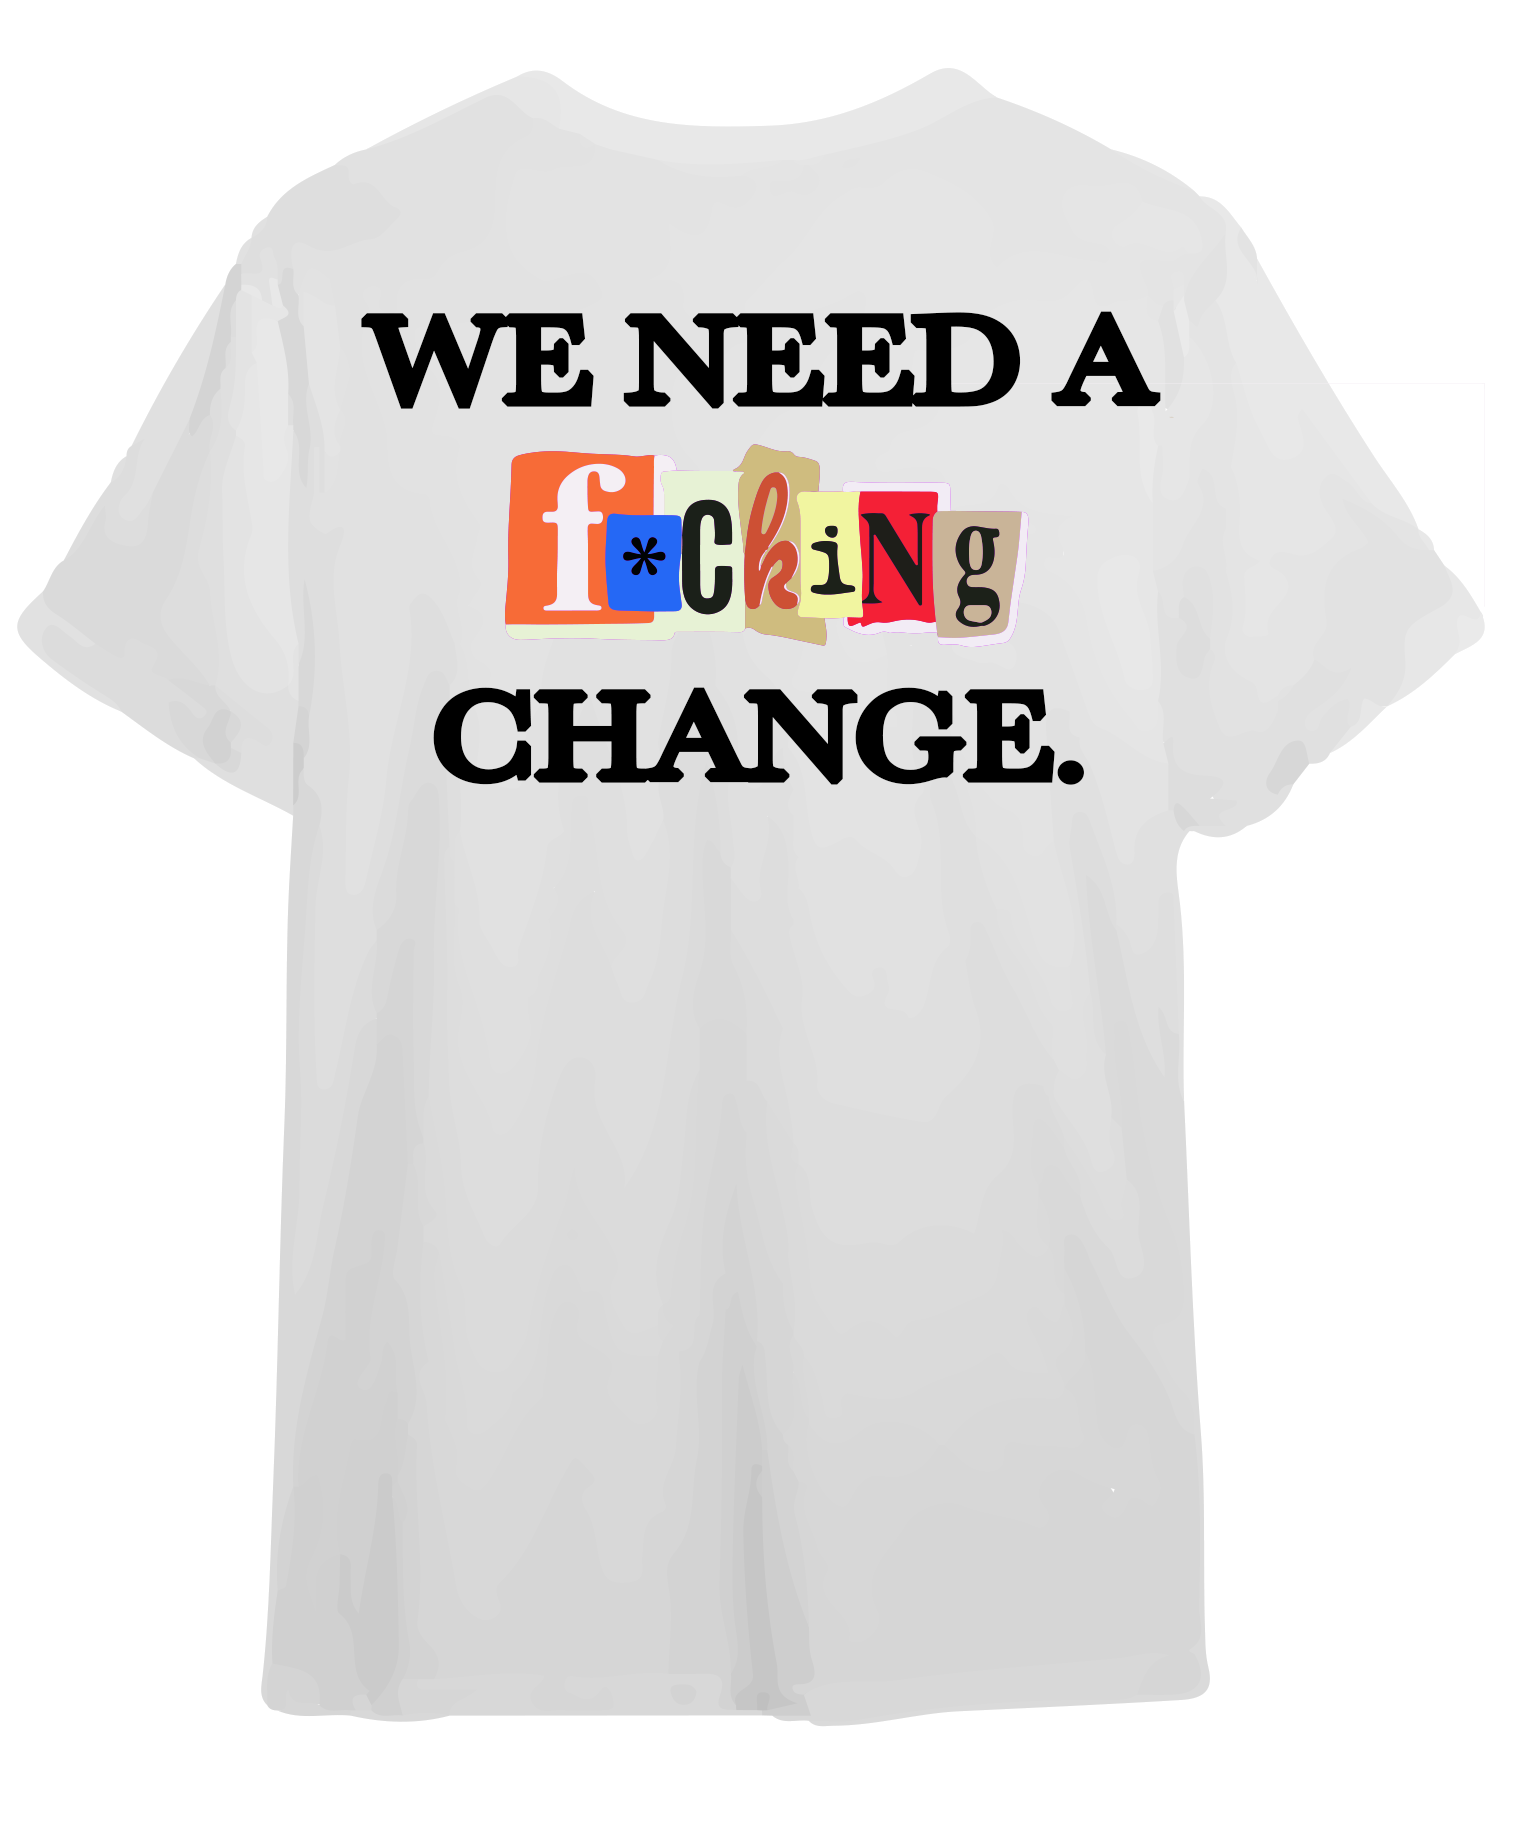 we need a fucking change camiseta blabca disorder wave